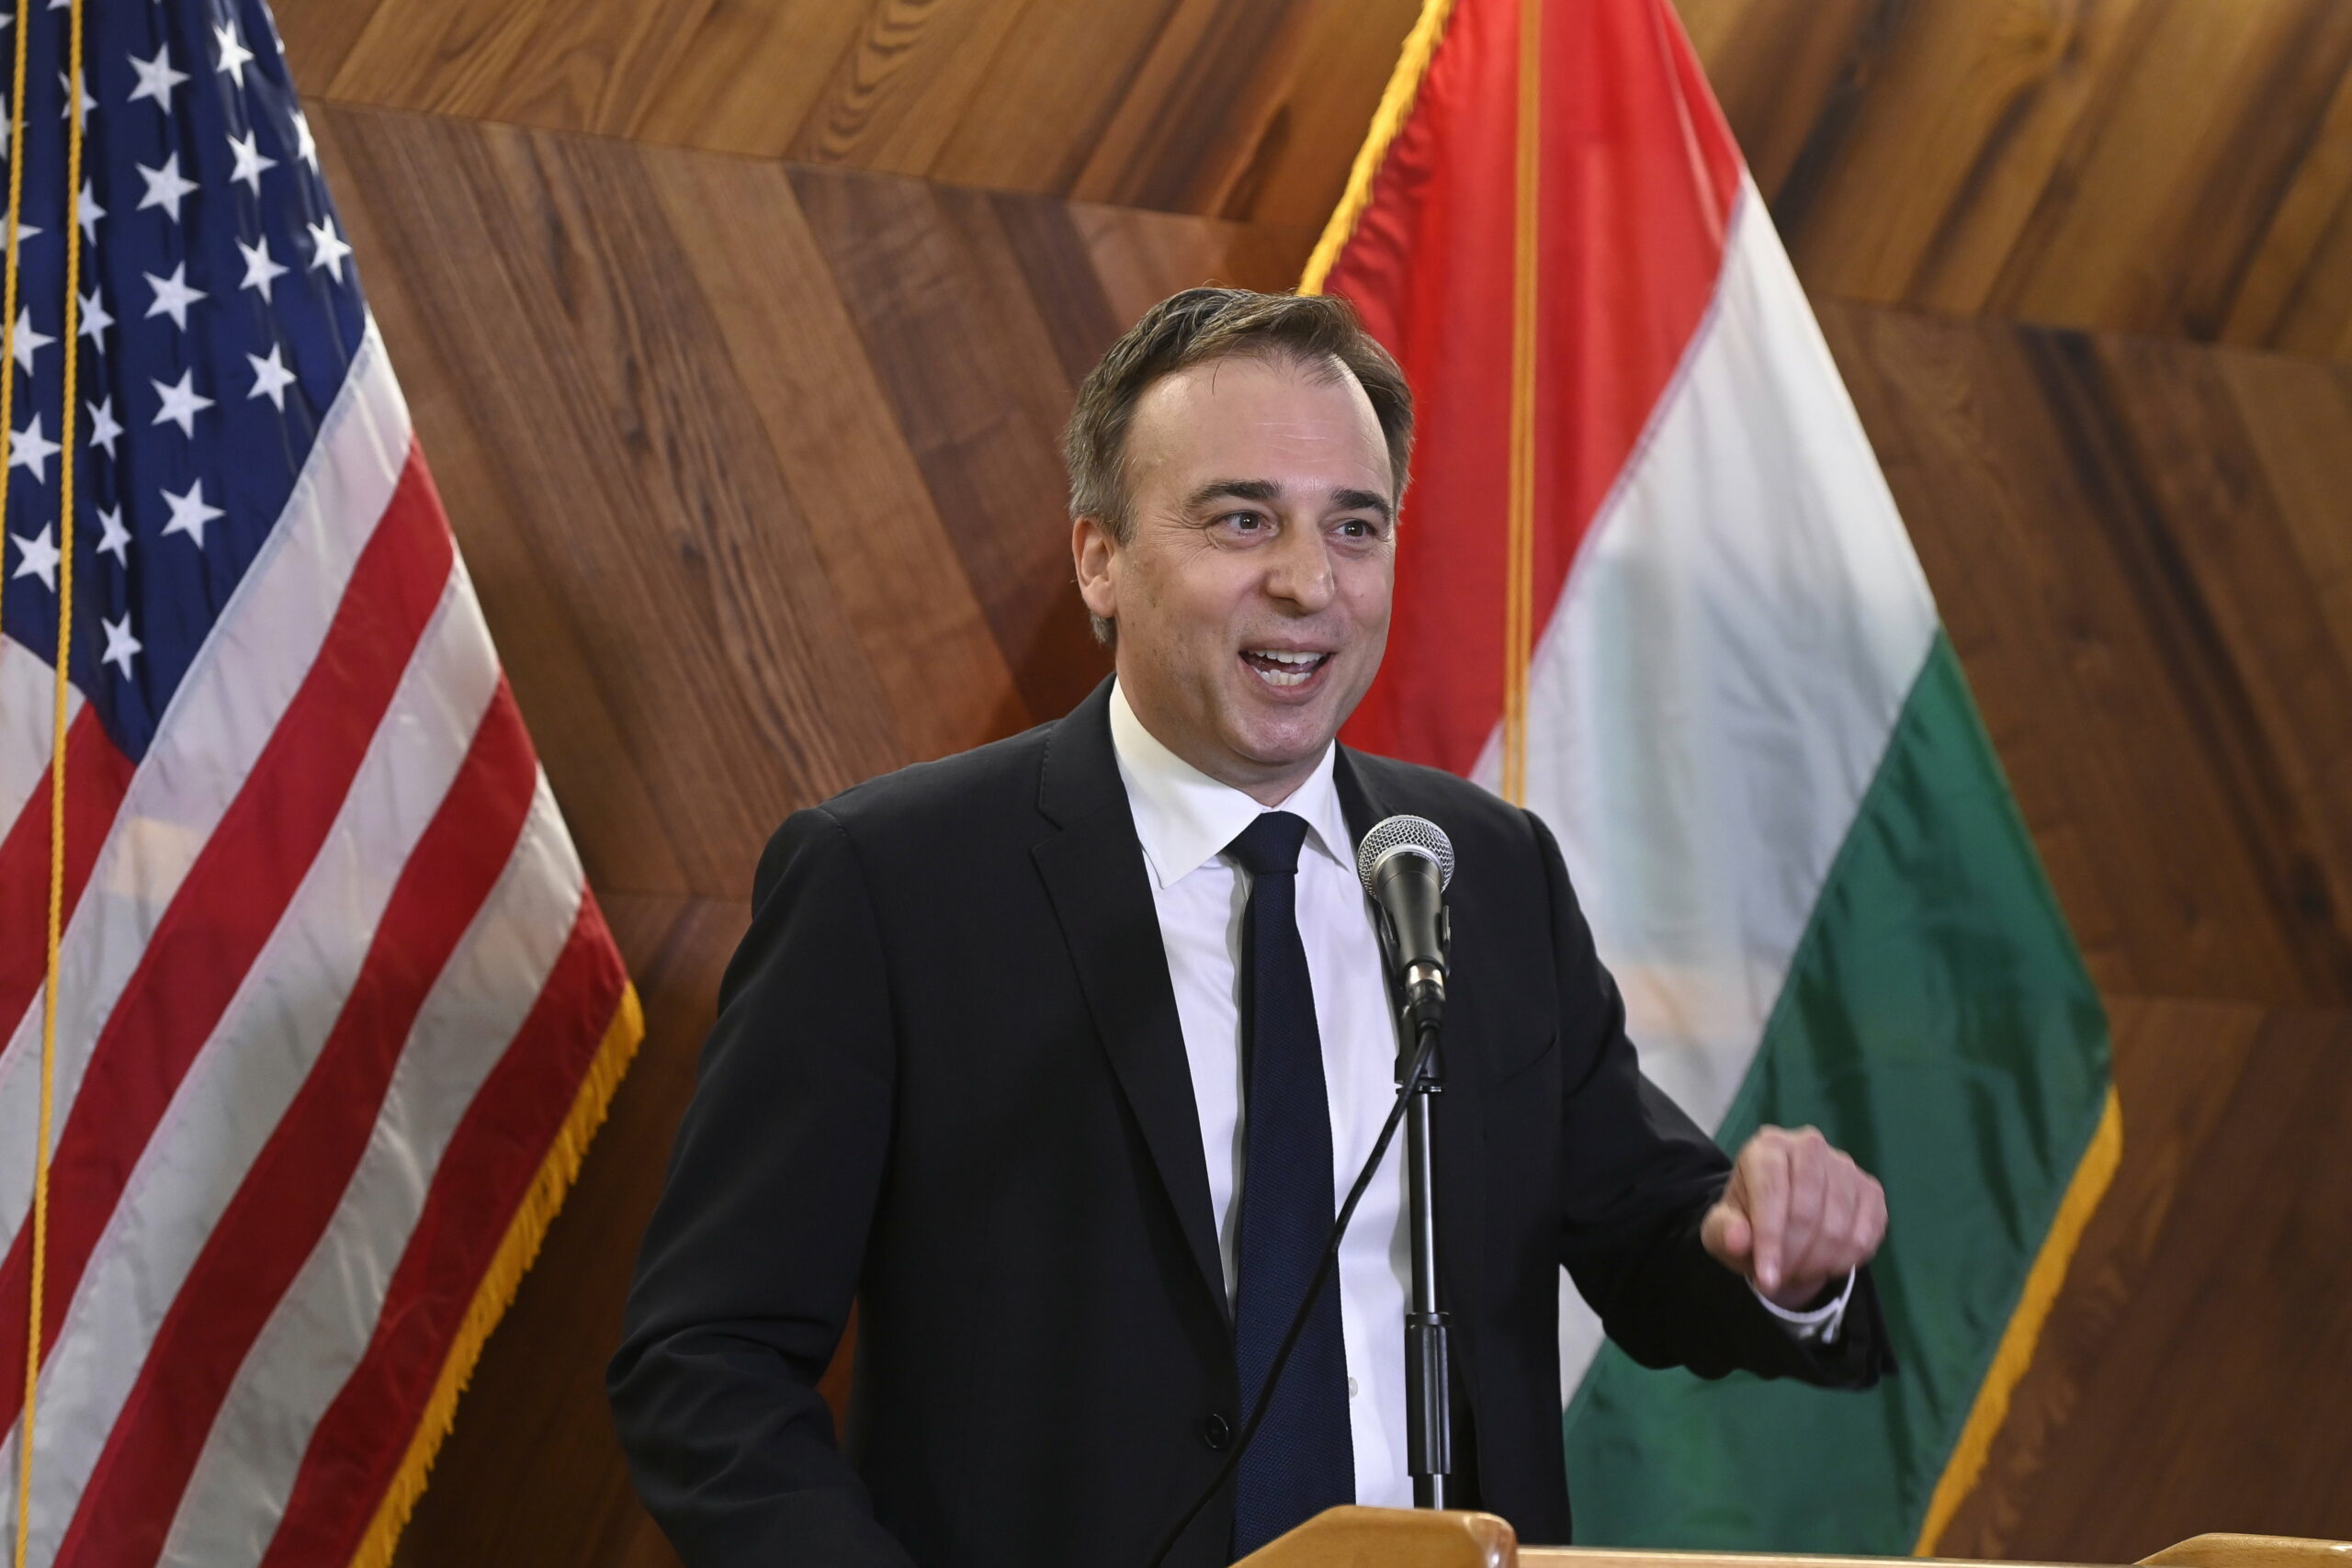 Itt az amerikai nagykövet válasza Orbán Trumpot támogató bejegyzésére